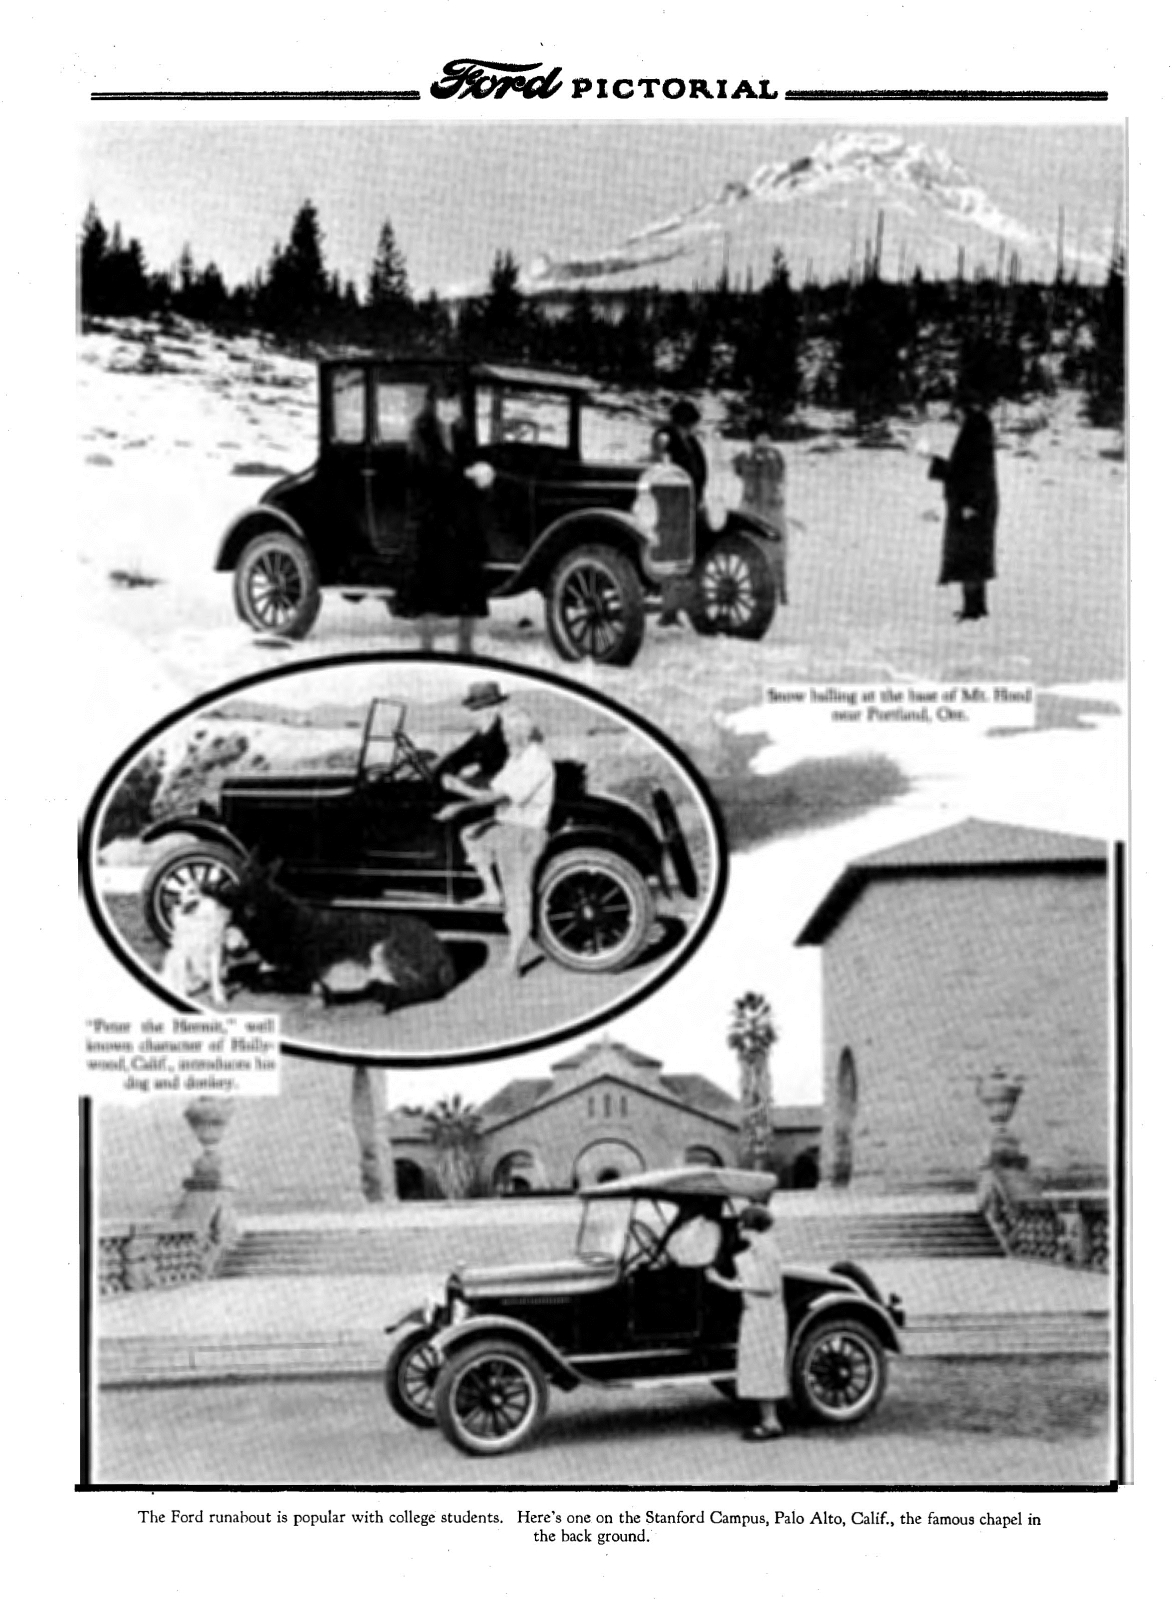 n_1926 Ford Pictorial-02-2.jpg